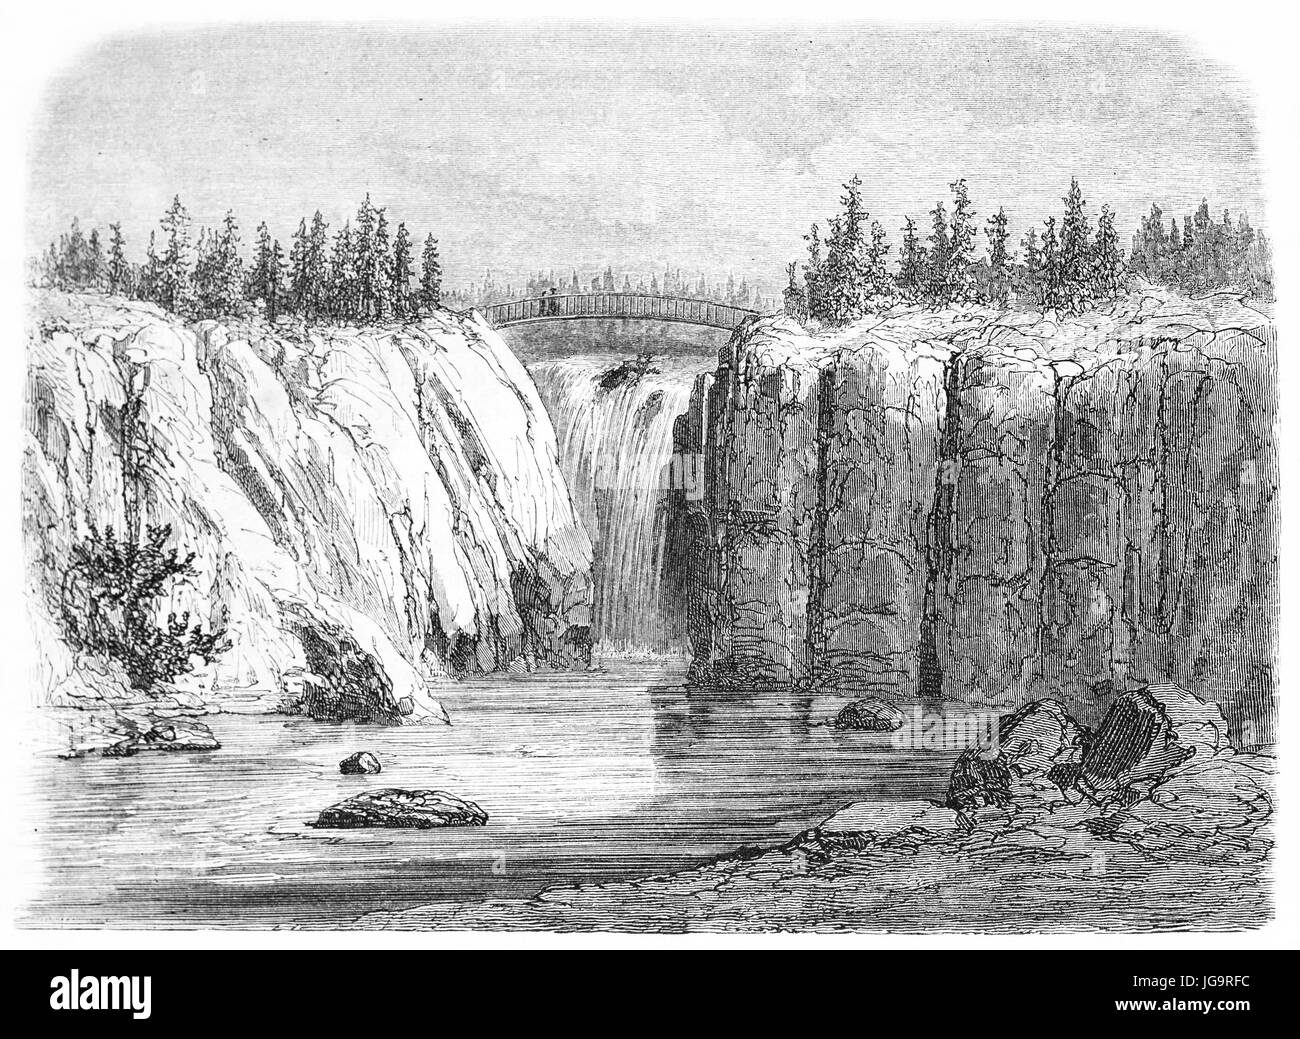 Vue ancienne de grandes chutes de la rivière Passaic, États-Unis d'Amérique. Créé par Doré après Deville, publié sur le Tour du Monde, Paris, 1861 Banque D'Images